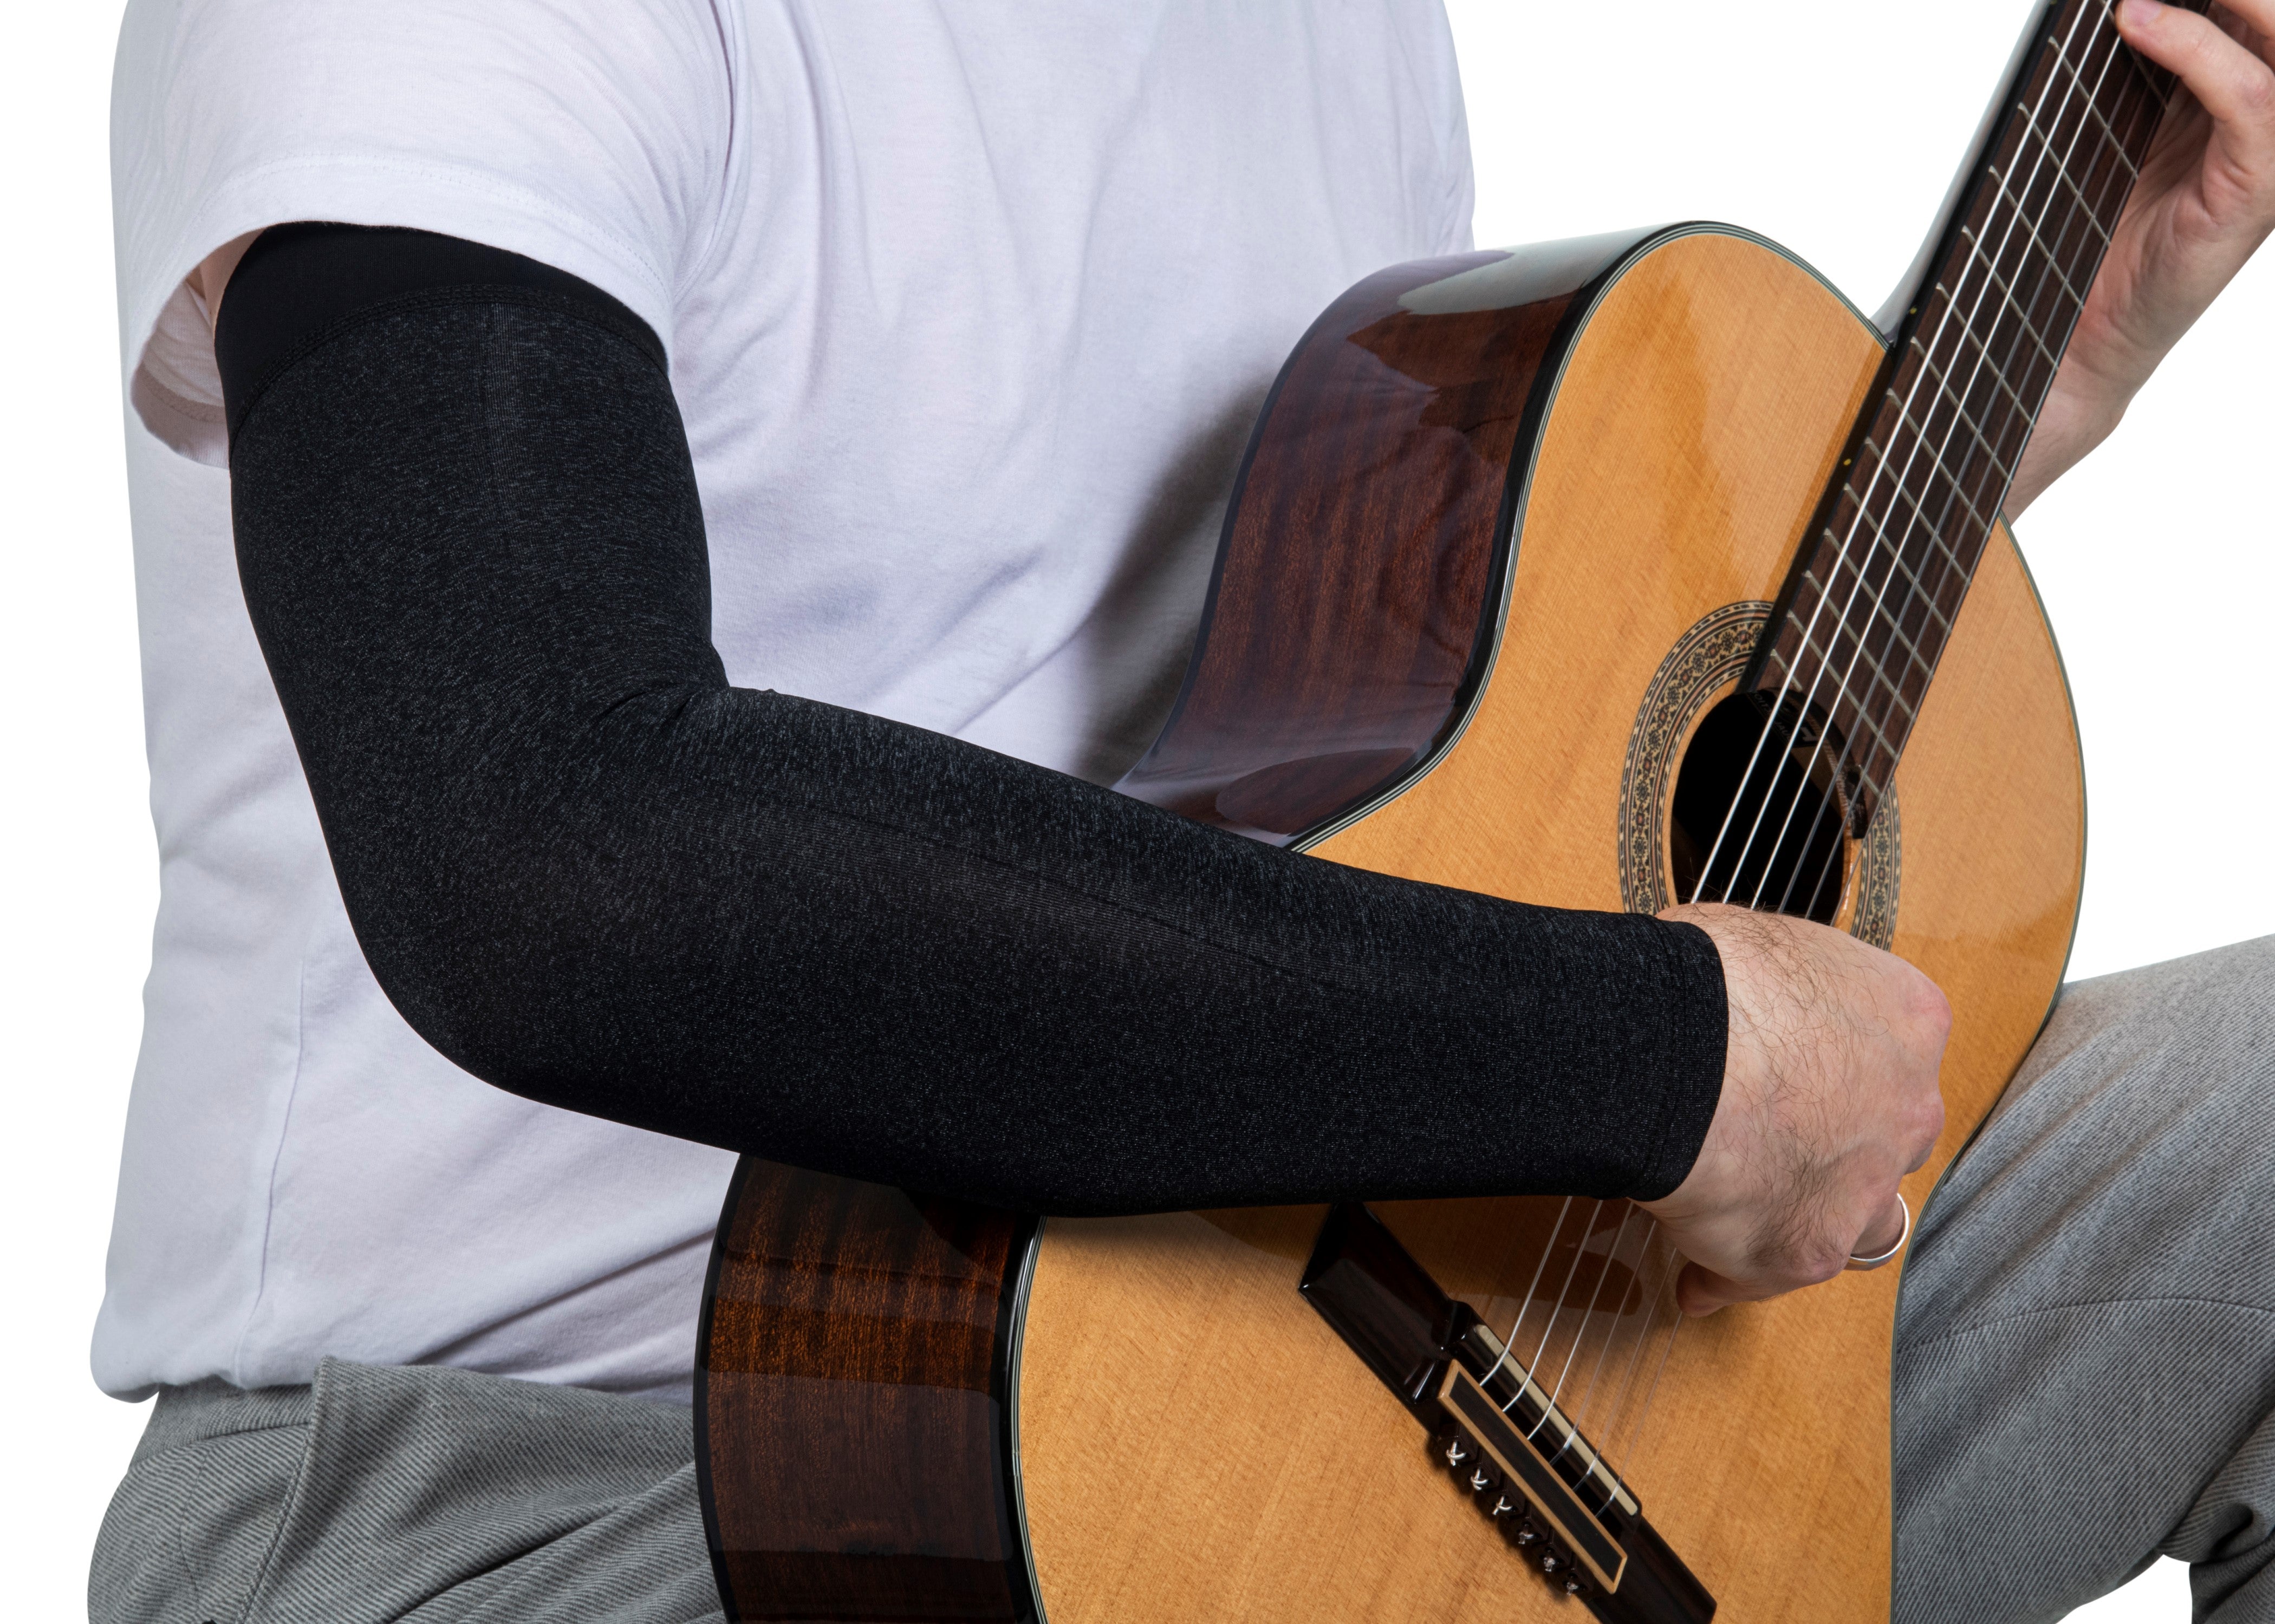 Alba Guitar Ärmel - Armschutz für Ihre klassische Gitarre